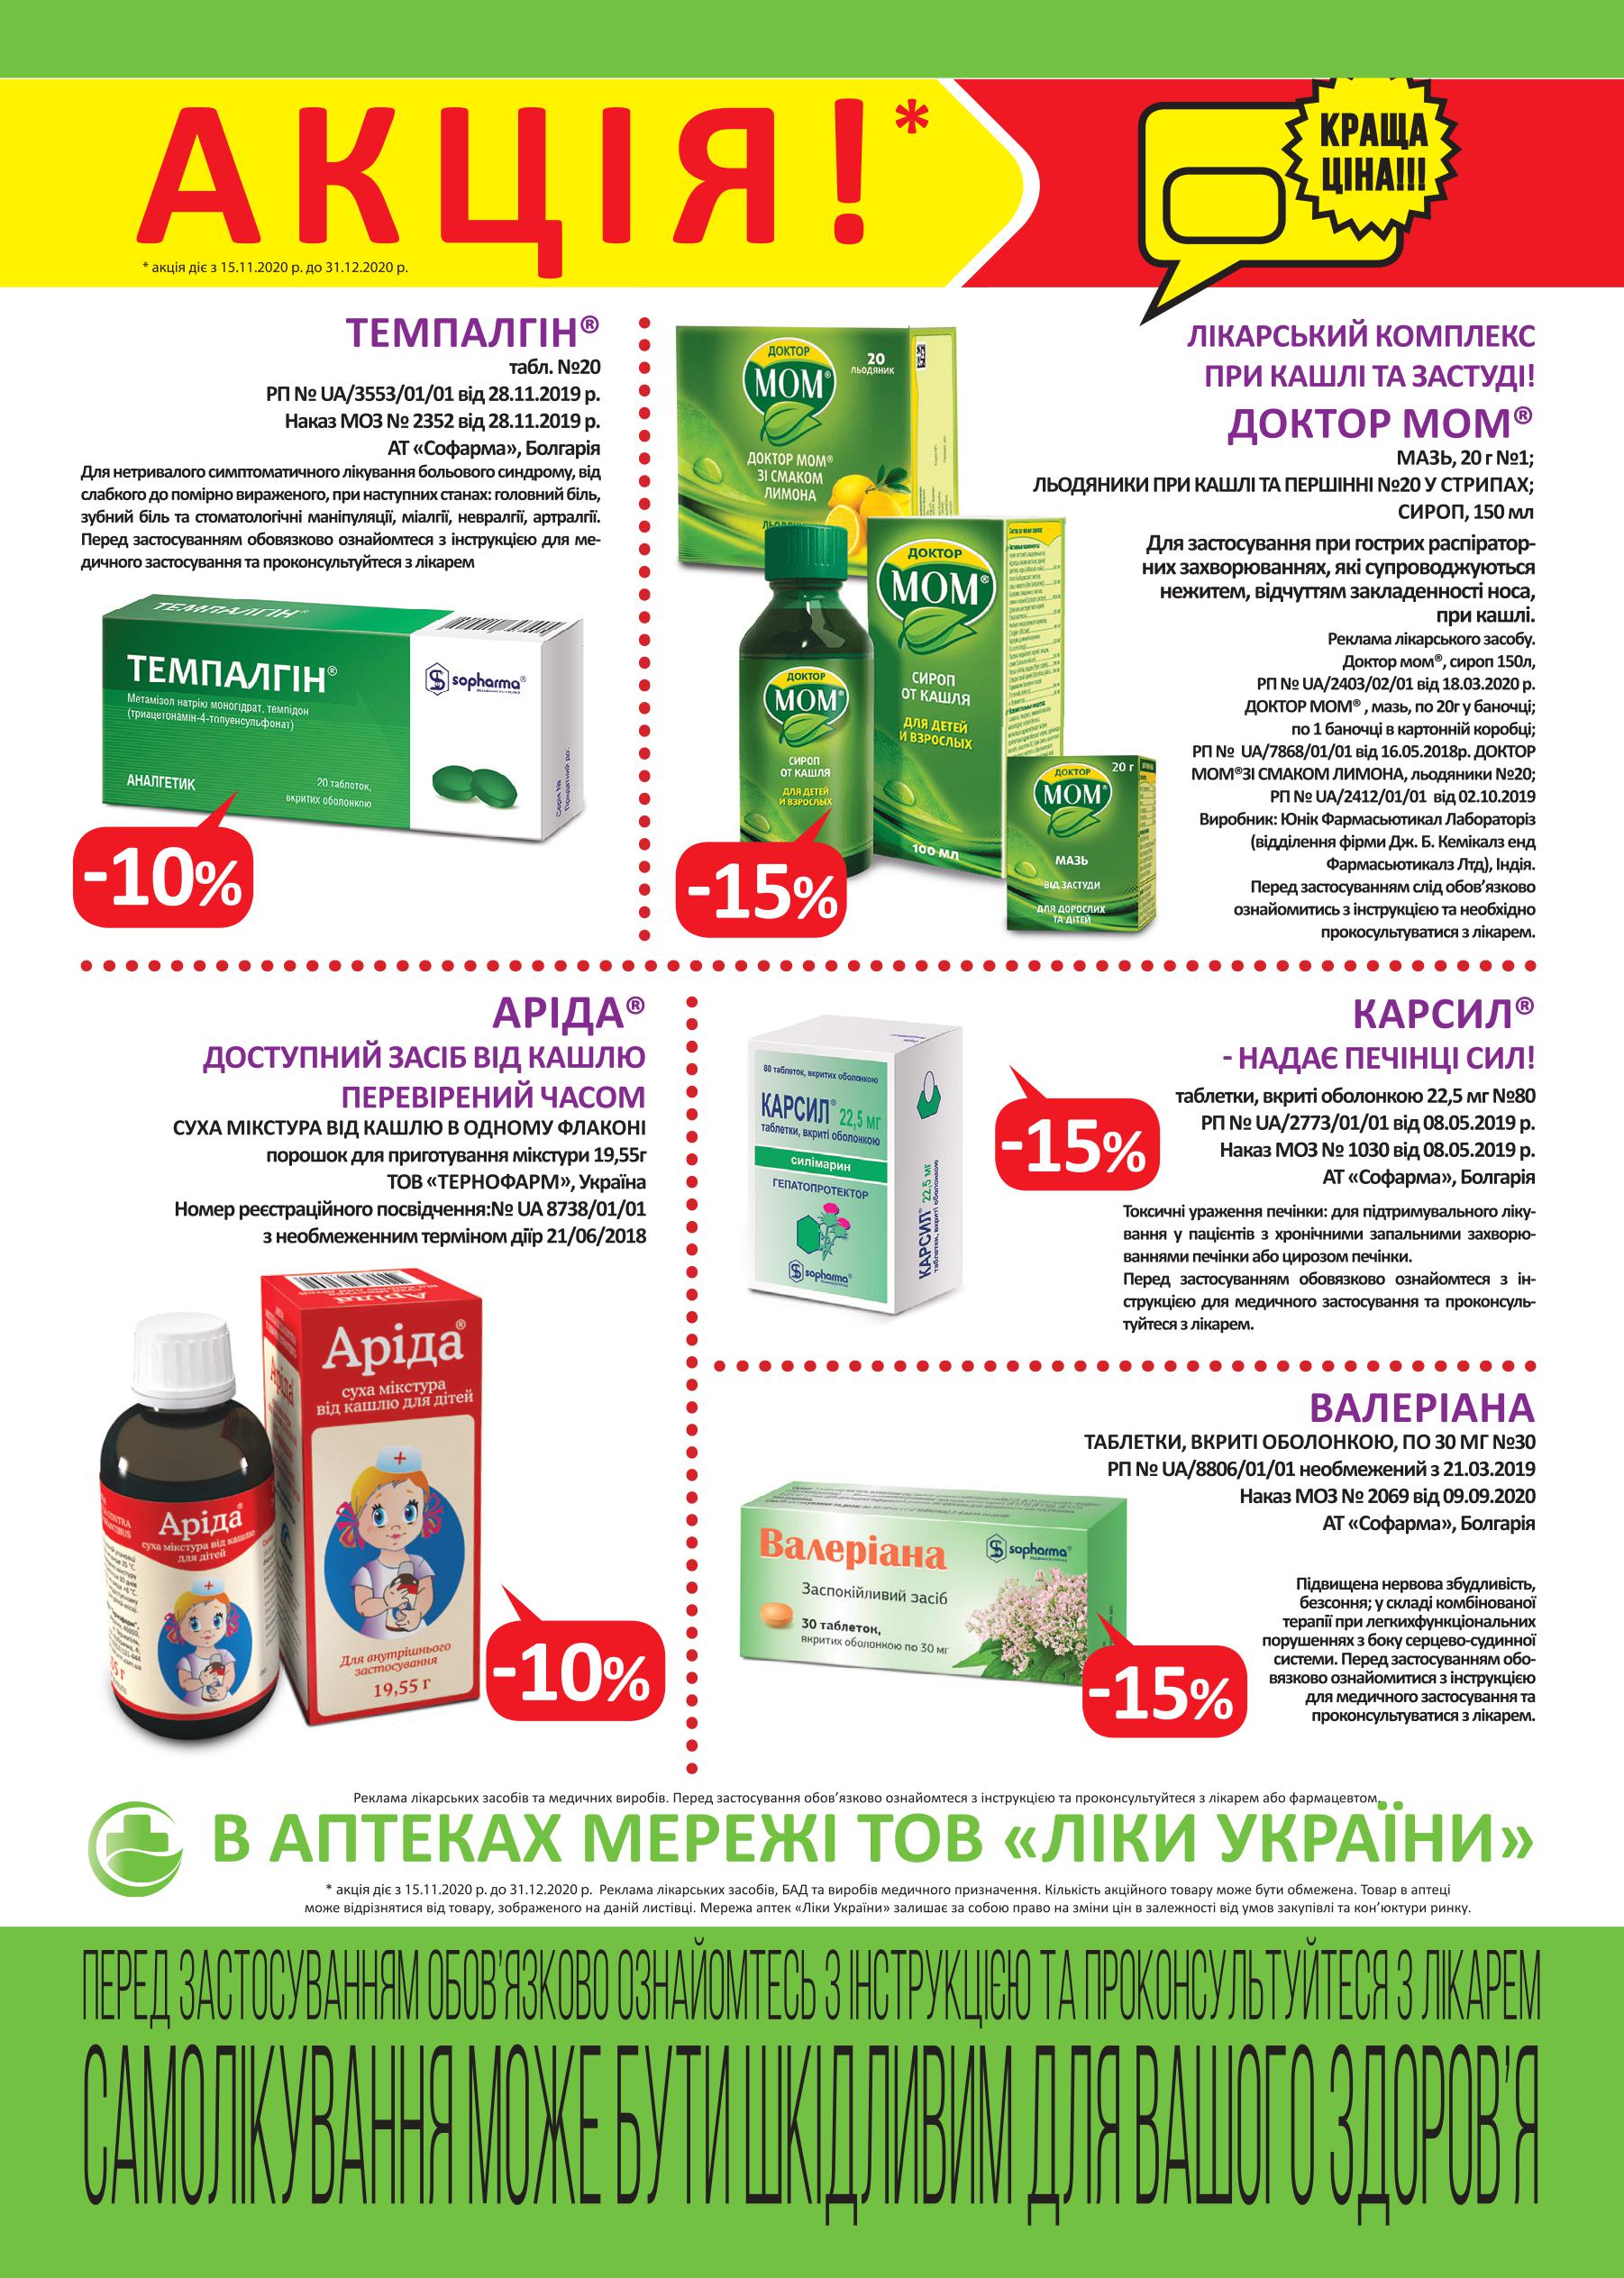 В аптеках мережі ТОВ "Ліки України" з 15.11 по 31.12 діє акція.